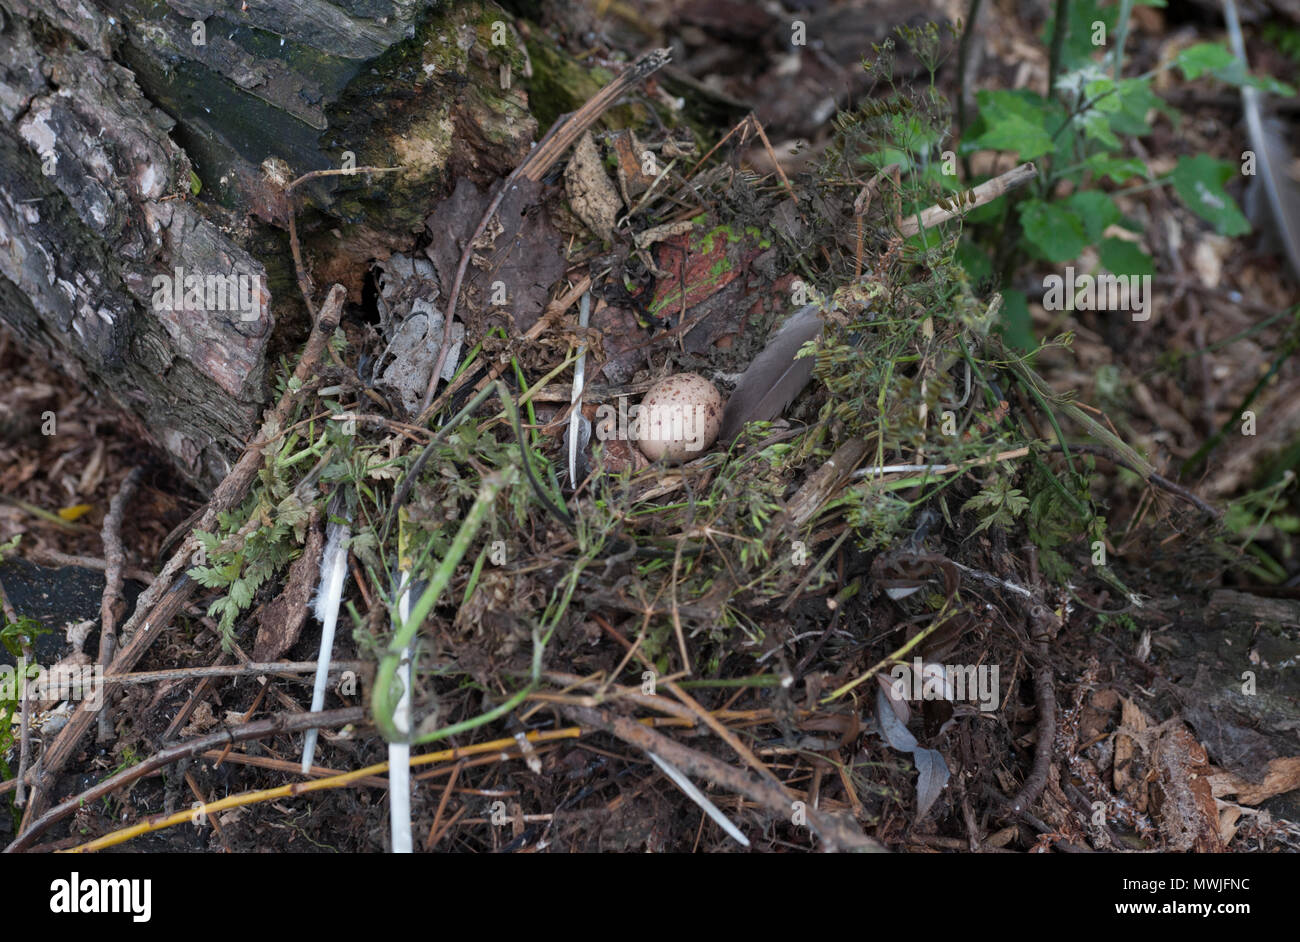 Nest und einzelnes Ei von Common Moorhen, Gallinula chloropus, auch bekannt als Moorhen, Swamphen, Regent's Park, London, Vereinigtes Königreich Stockfoto